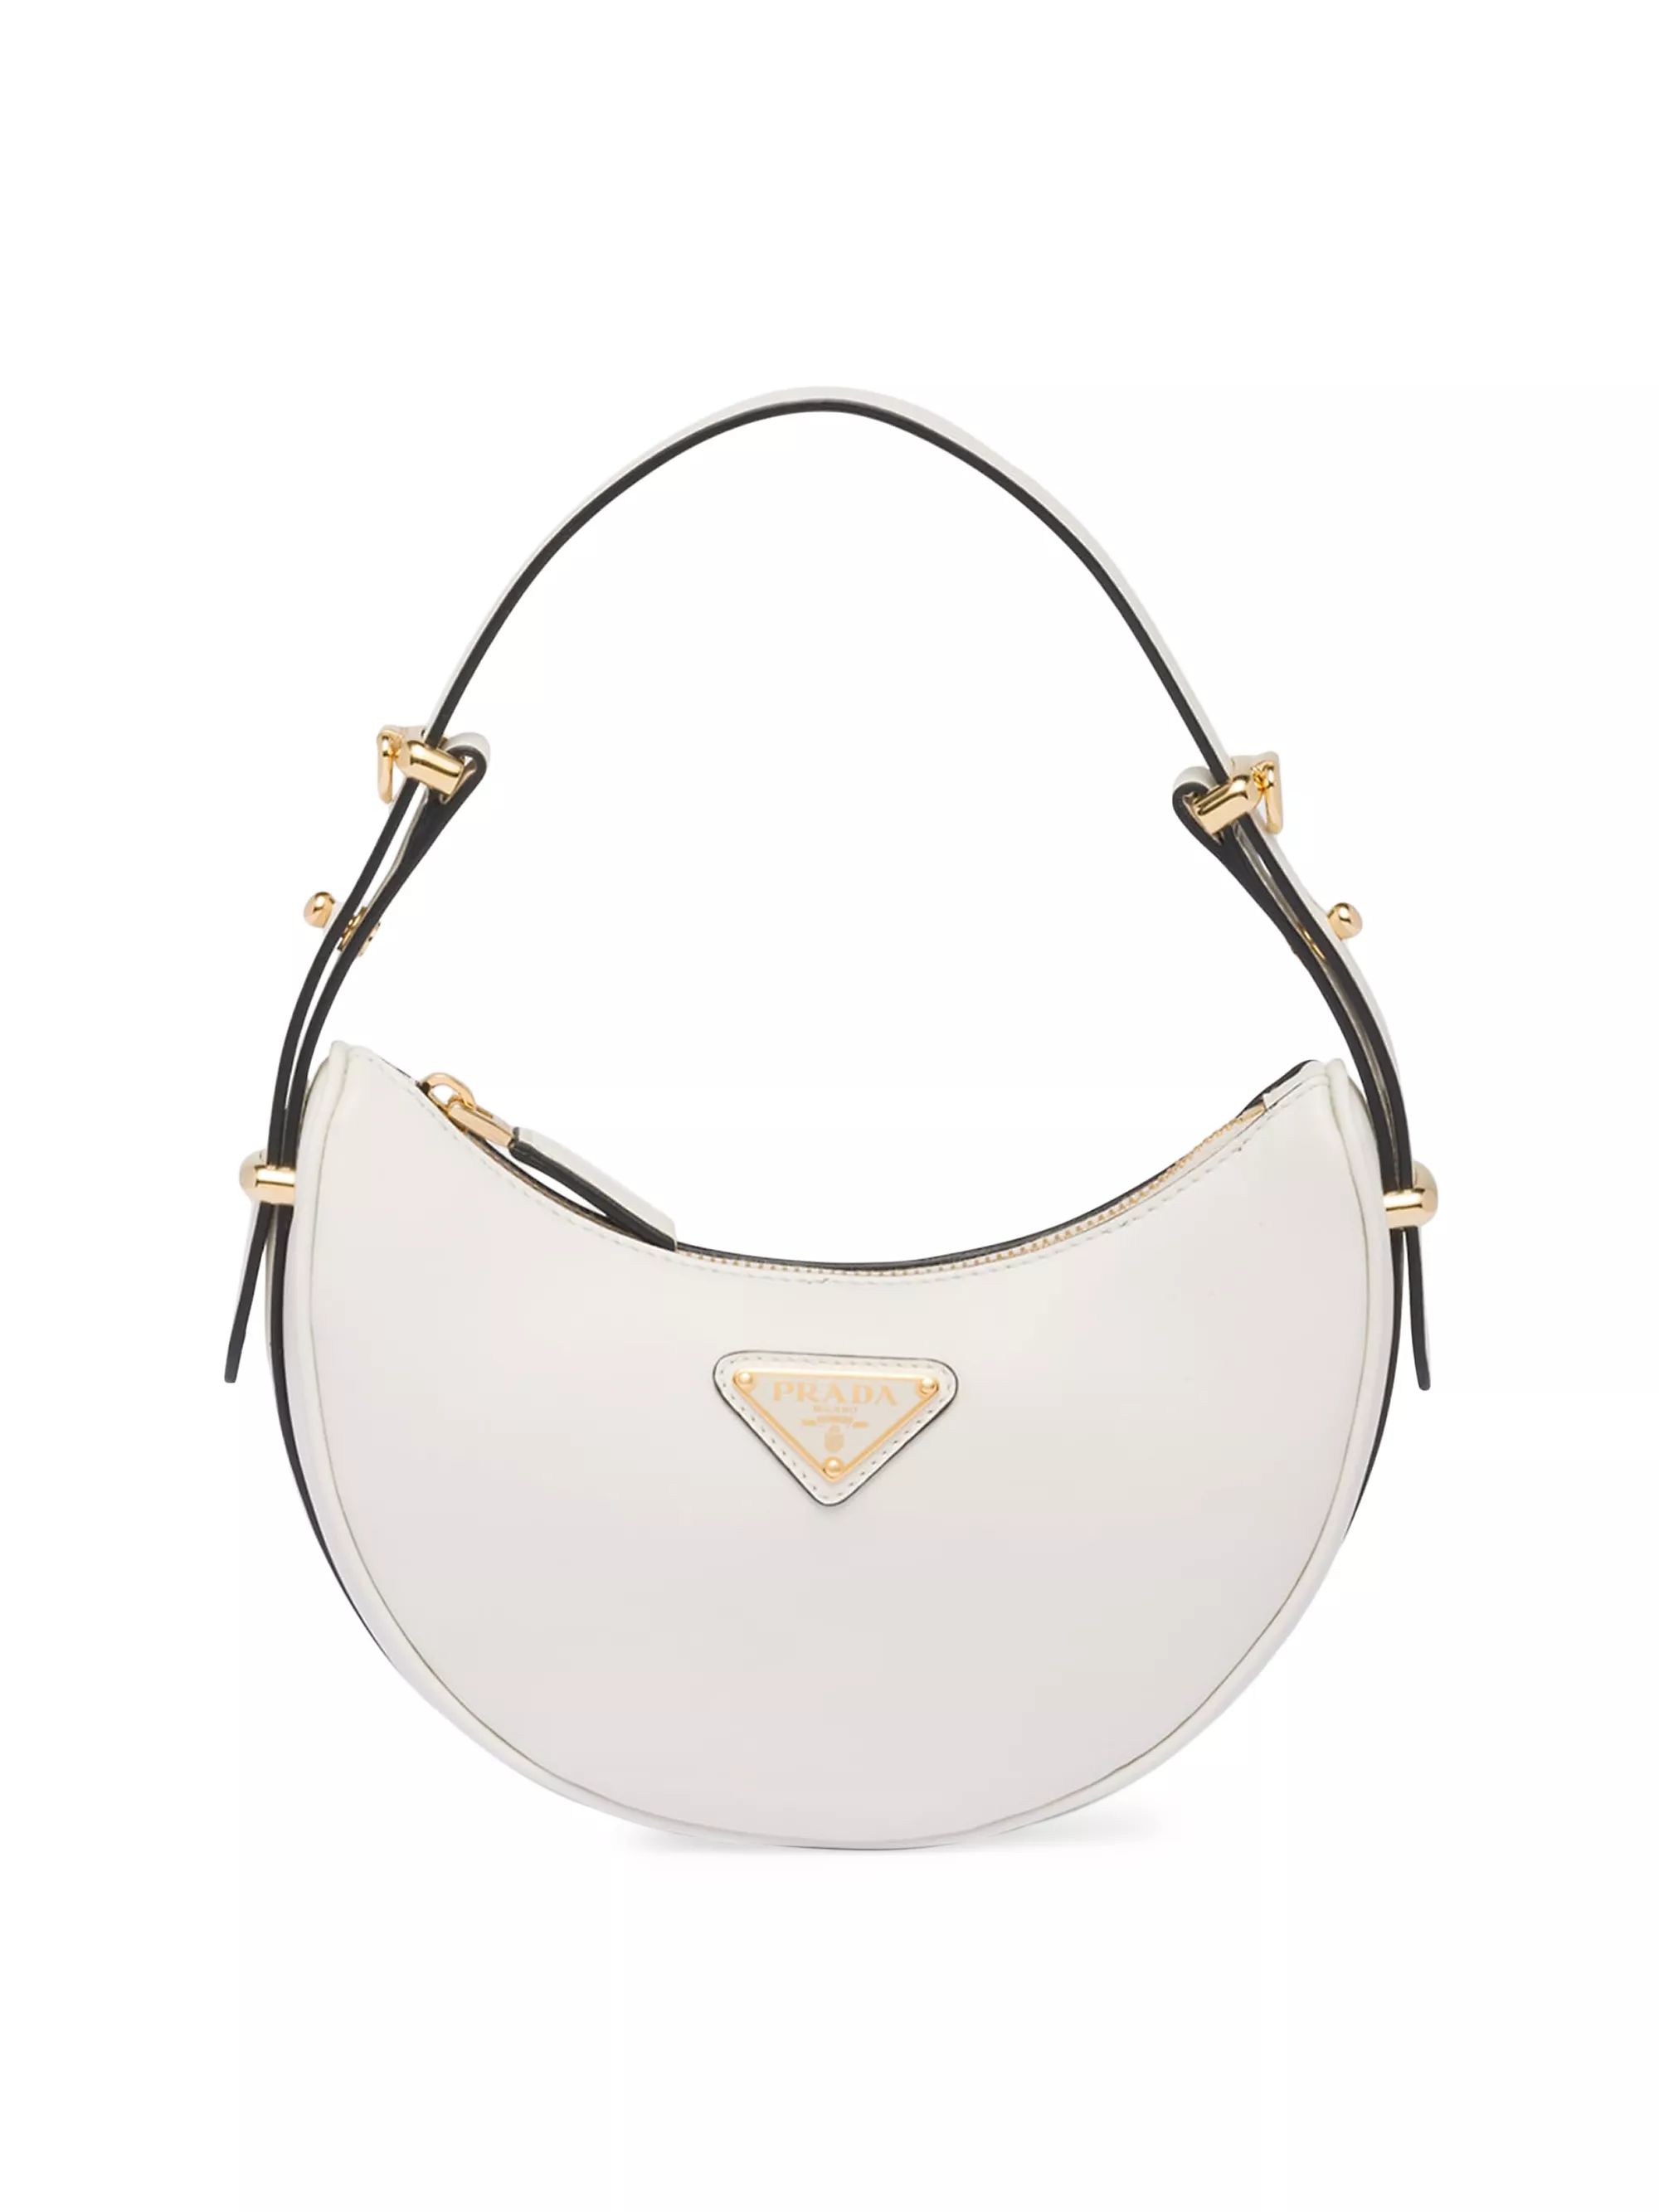 WhiteStyleBLACKWHITEAll Shoulder BagsPradaLeather Mini Shoulder Bag$2,450
            
          ... | Saks Fifth Avenue